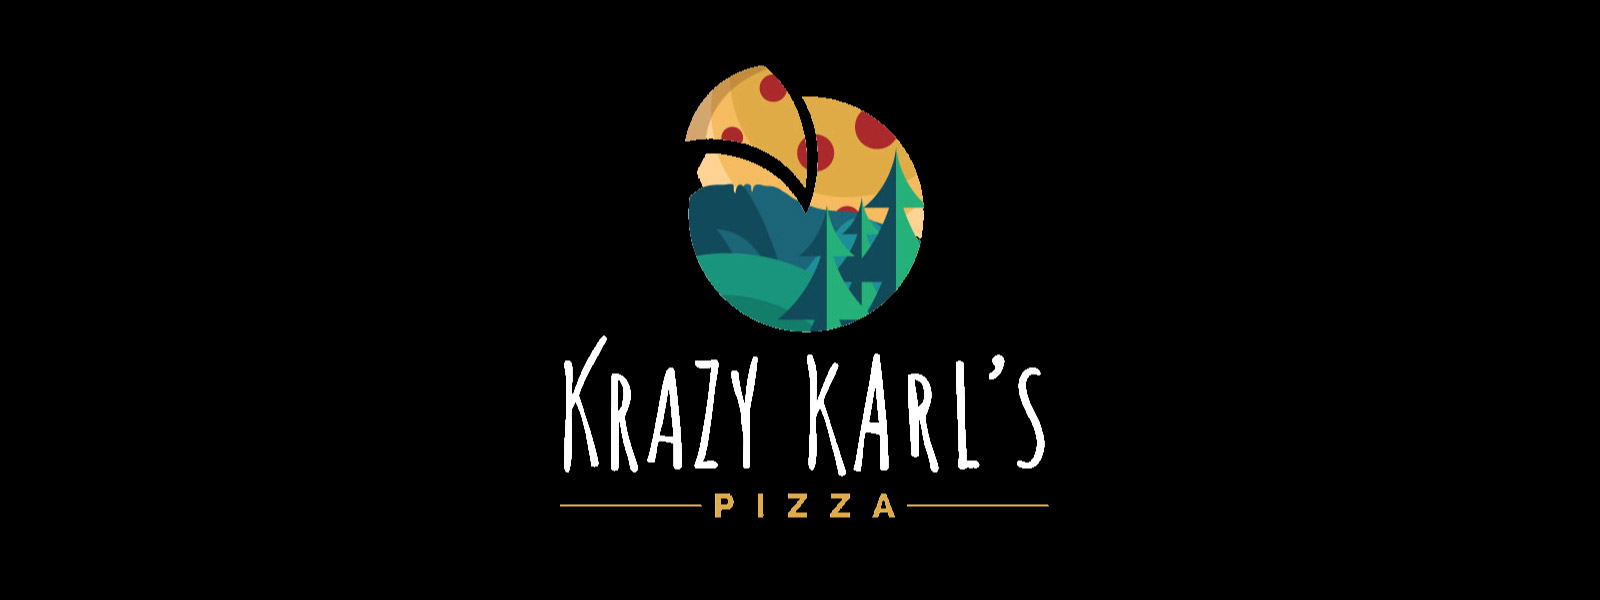 Krazy-Karls-header